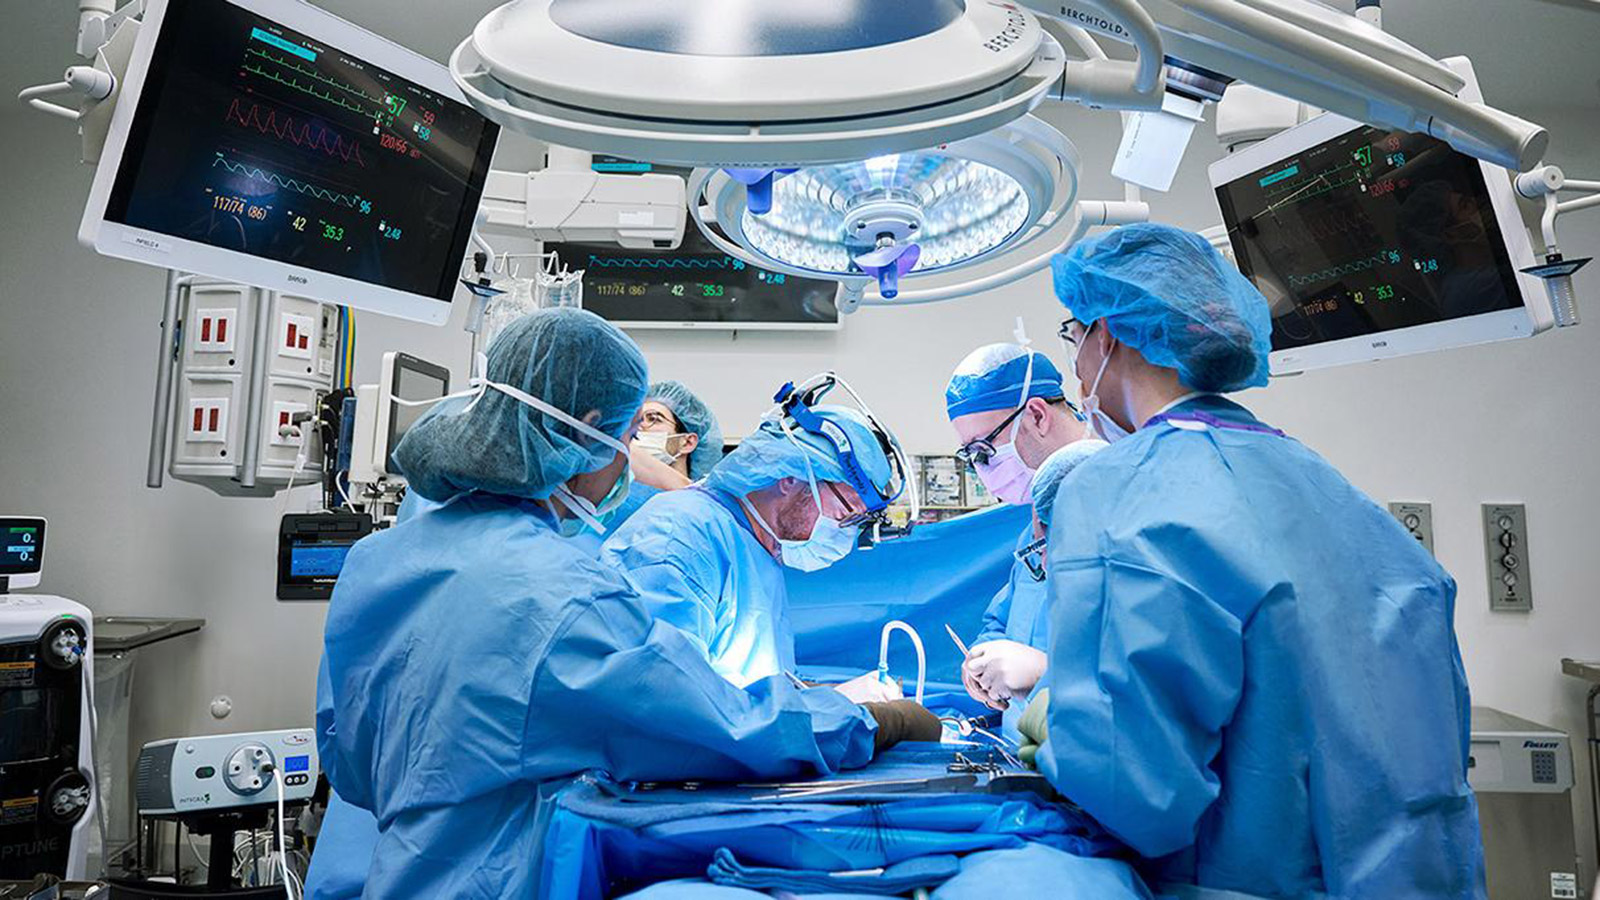 <p>Операция по трансплантации почки в Медицинском центре Нью-Йоркского университета</p>